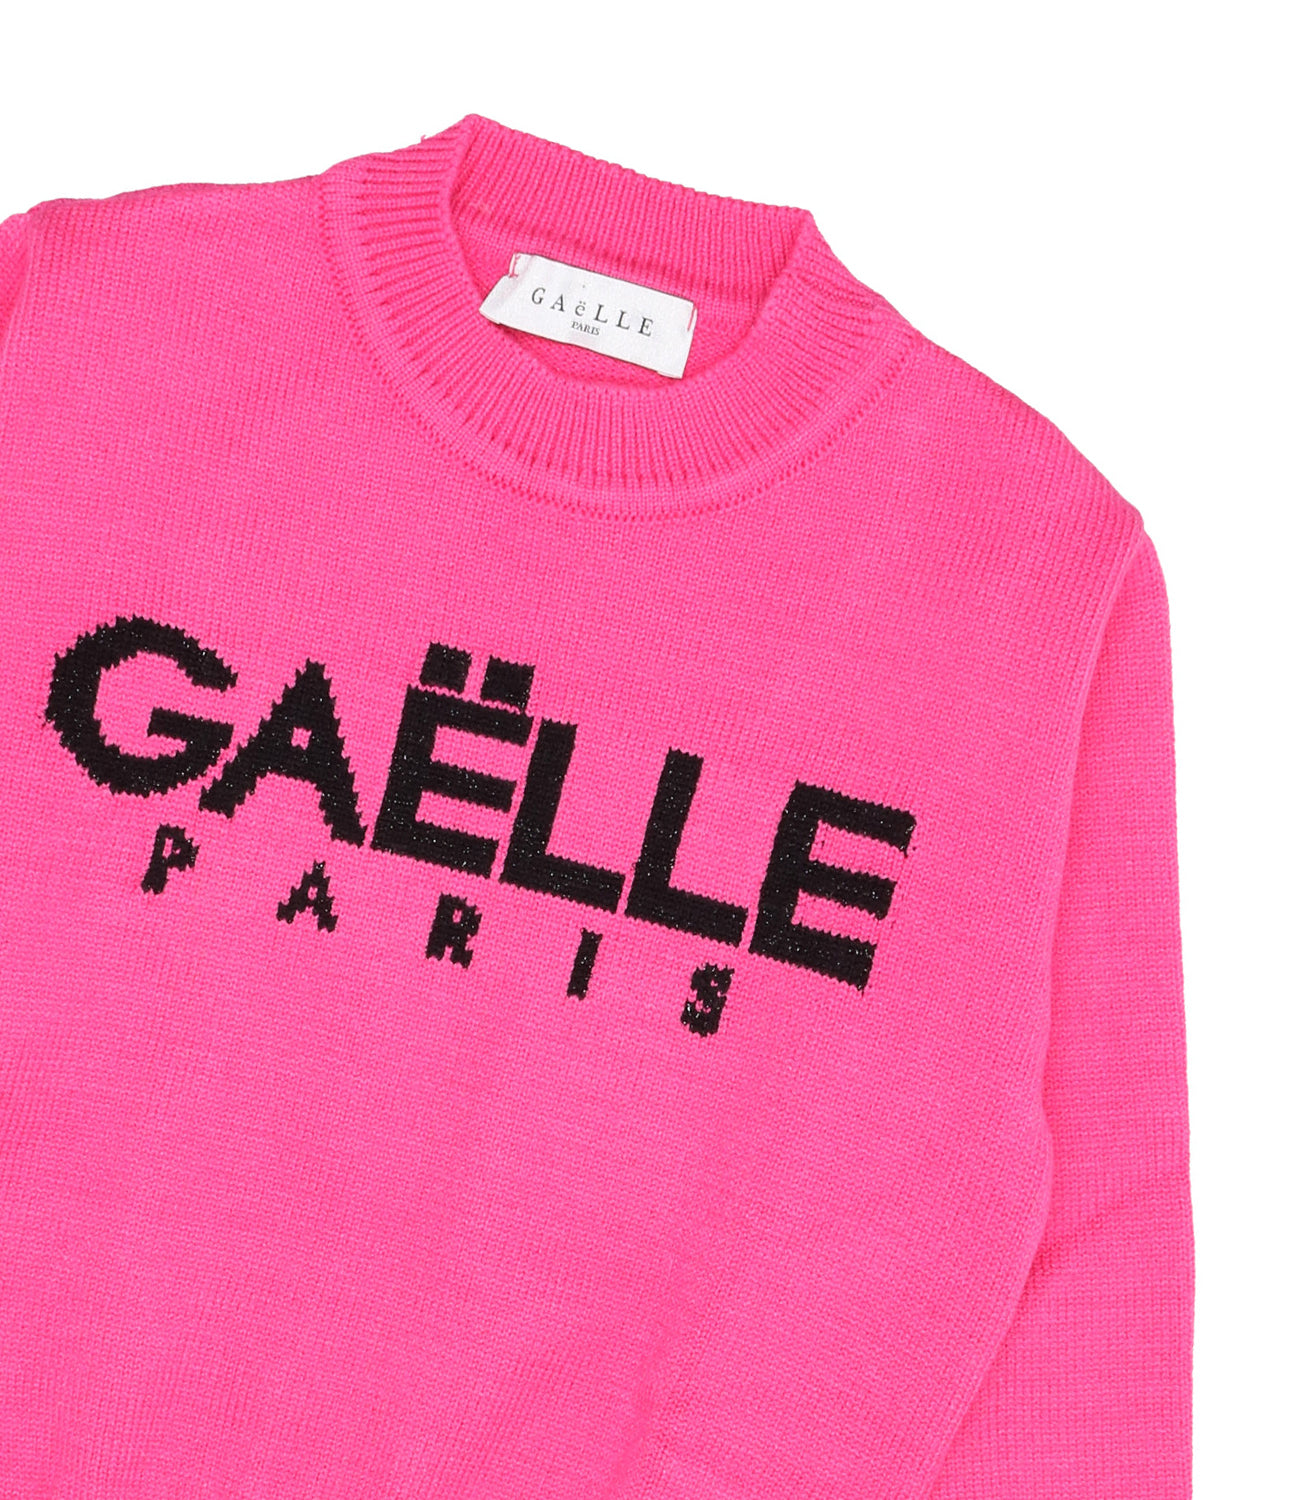 Gaelle Paris | Fuxia Sweater